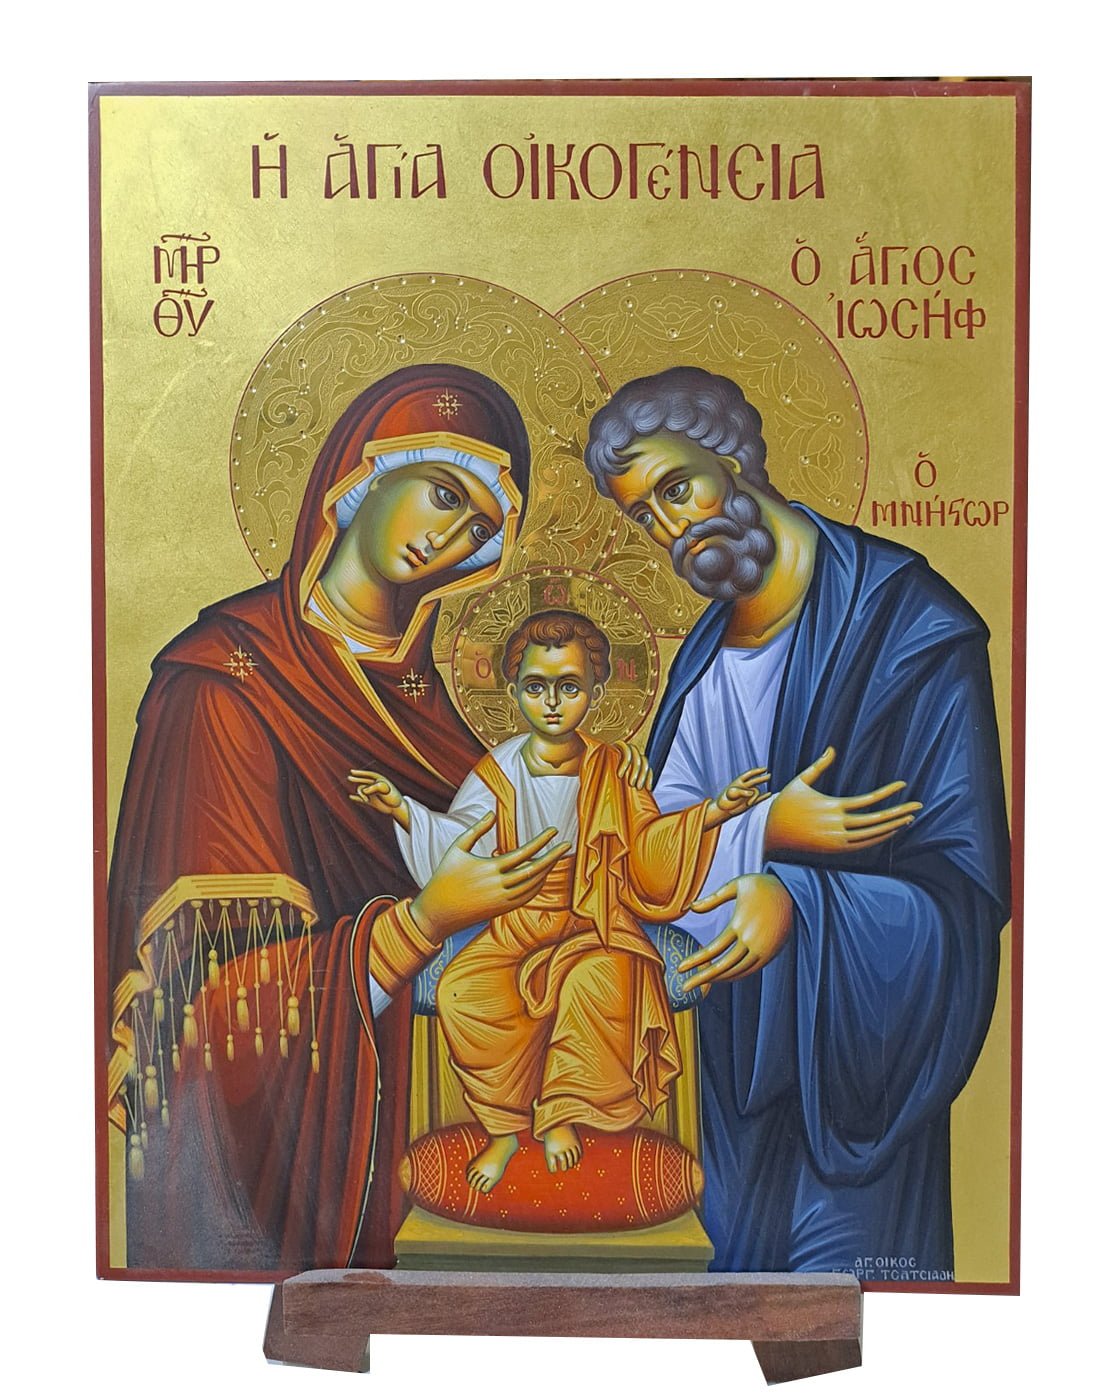 Χειροποίητη Βυζαντινή Αγιογραφία της Αγίας Οικογένειας